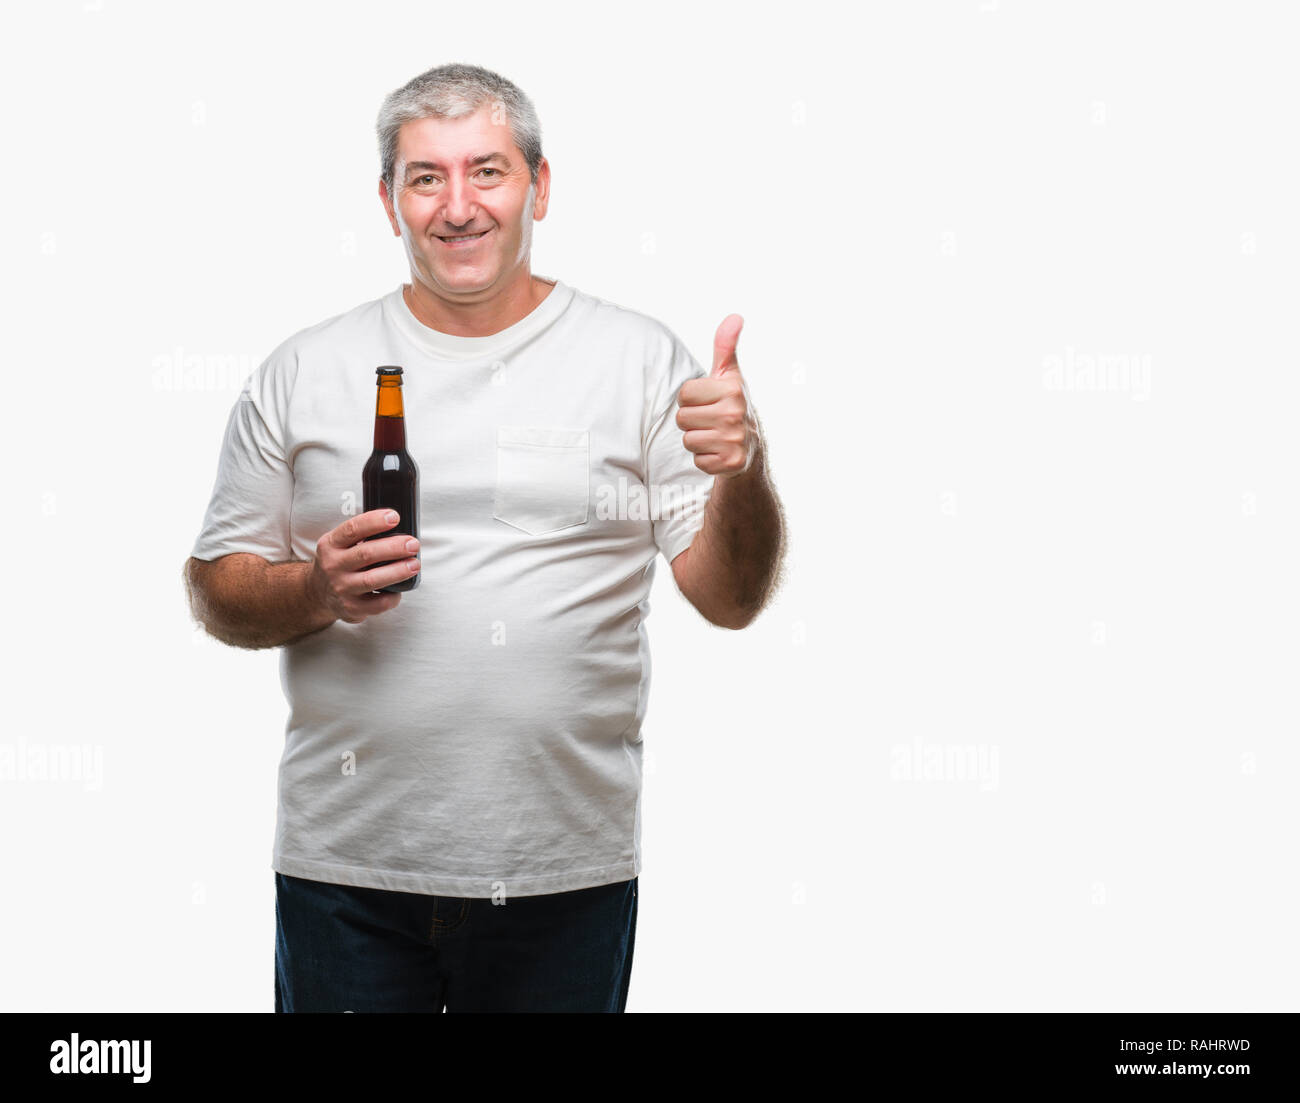 Schöne ältere Menschen trinken Bier Flasche über isolierte Hintergrund mit Lächeln tun ok Zeichen glücklich, Daumen hoch, mit den Fingern, ausgezeichnete Zeichen Stockfoto